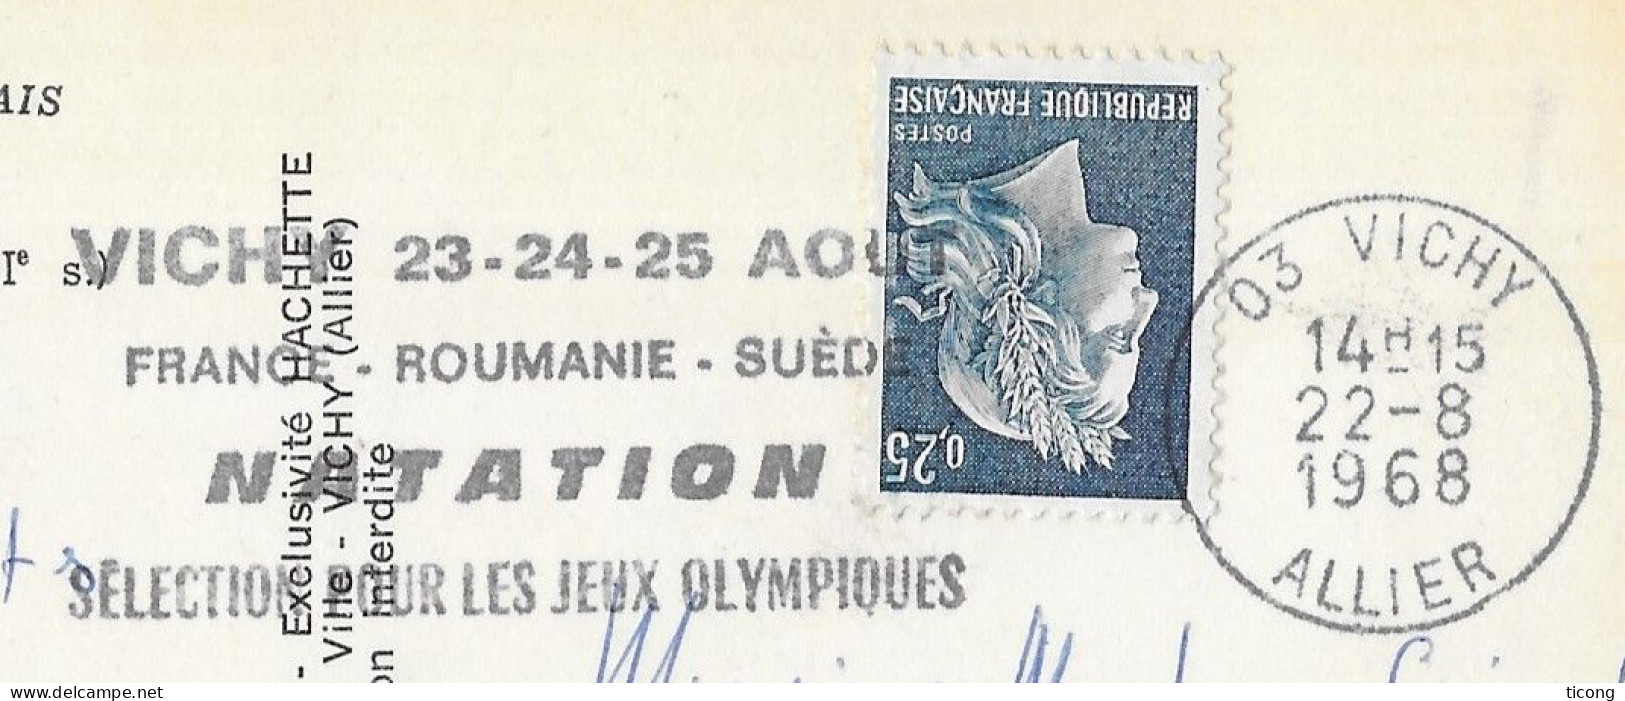 VICHY ALLIER 1968 FLAMME SELECTION POUR LES JEUX OLYMPIQUES DE NATATION FRANCE ROUMANIE SUEDE, CARTE HERISSON MOULIN - Lettres & Documents